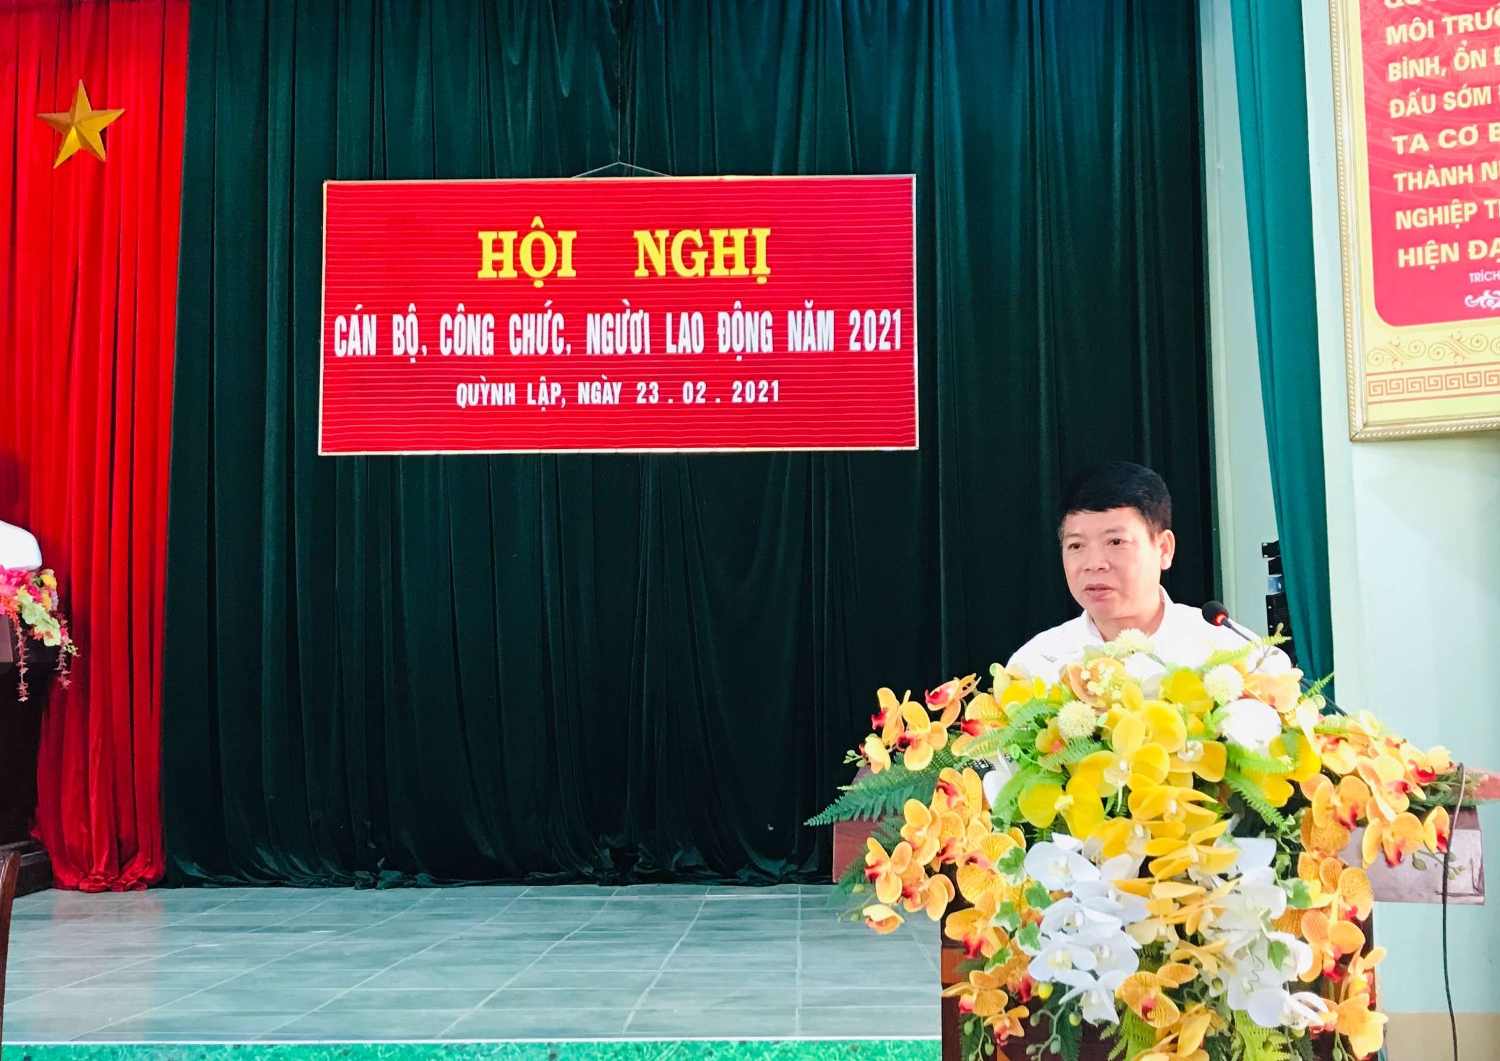 Ông Vương Đại Tương, Phó Bí thư Đảng ủy phát biểu chỉ đạo hội nghị